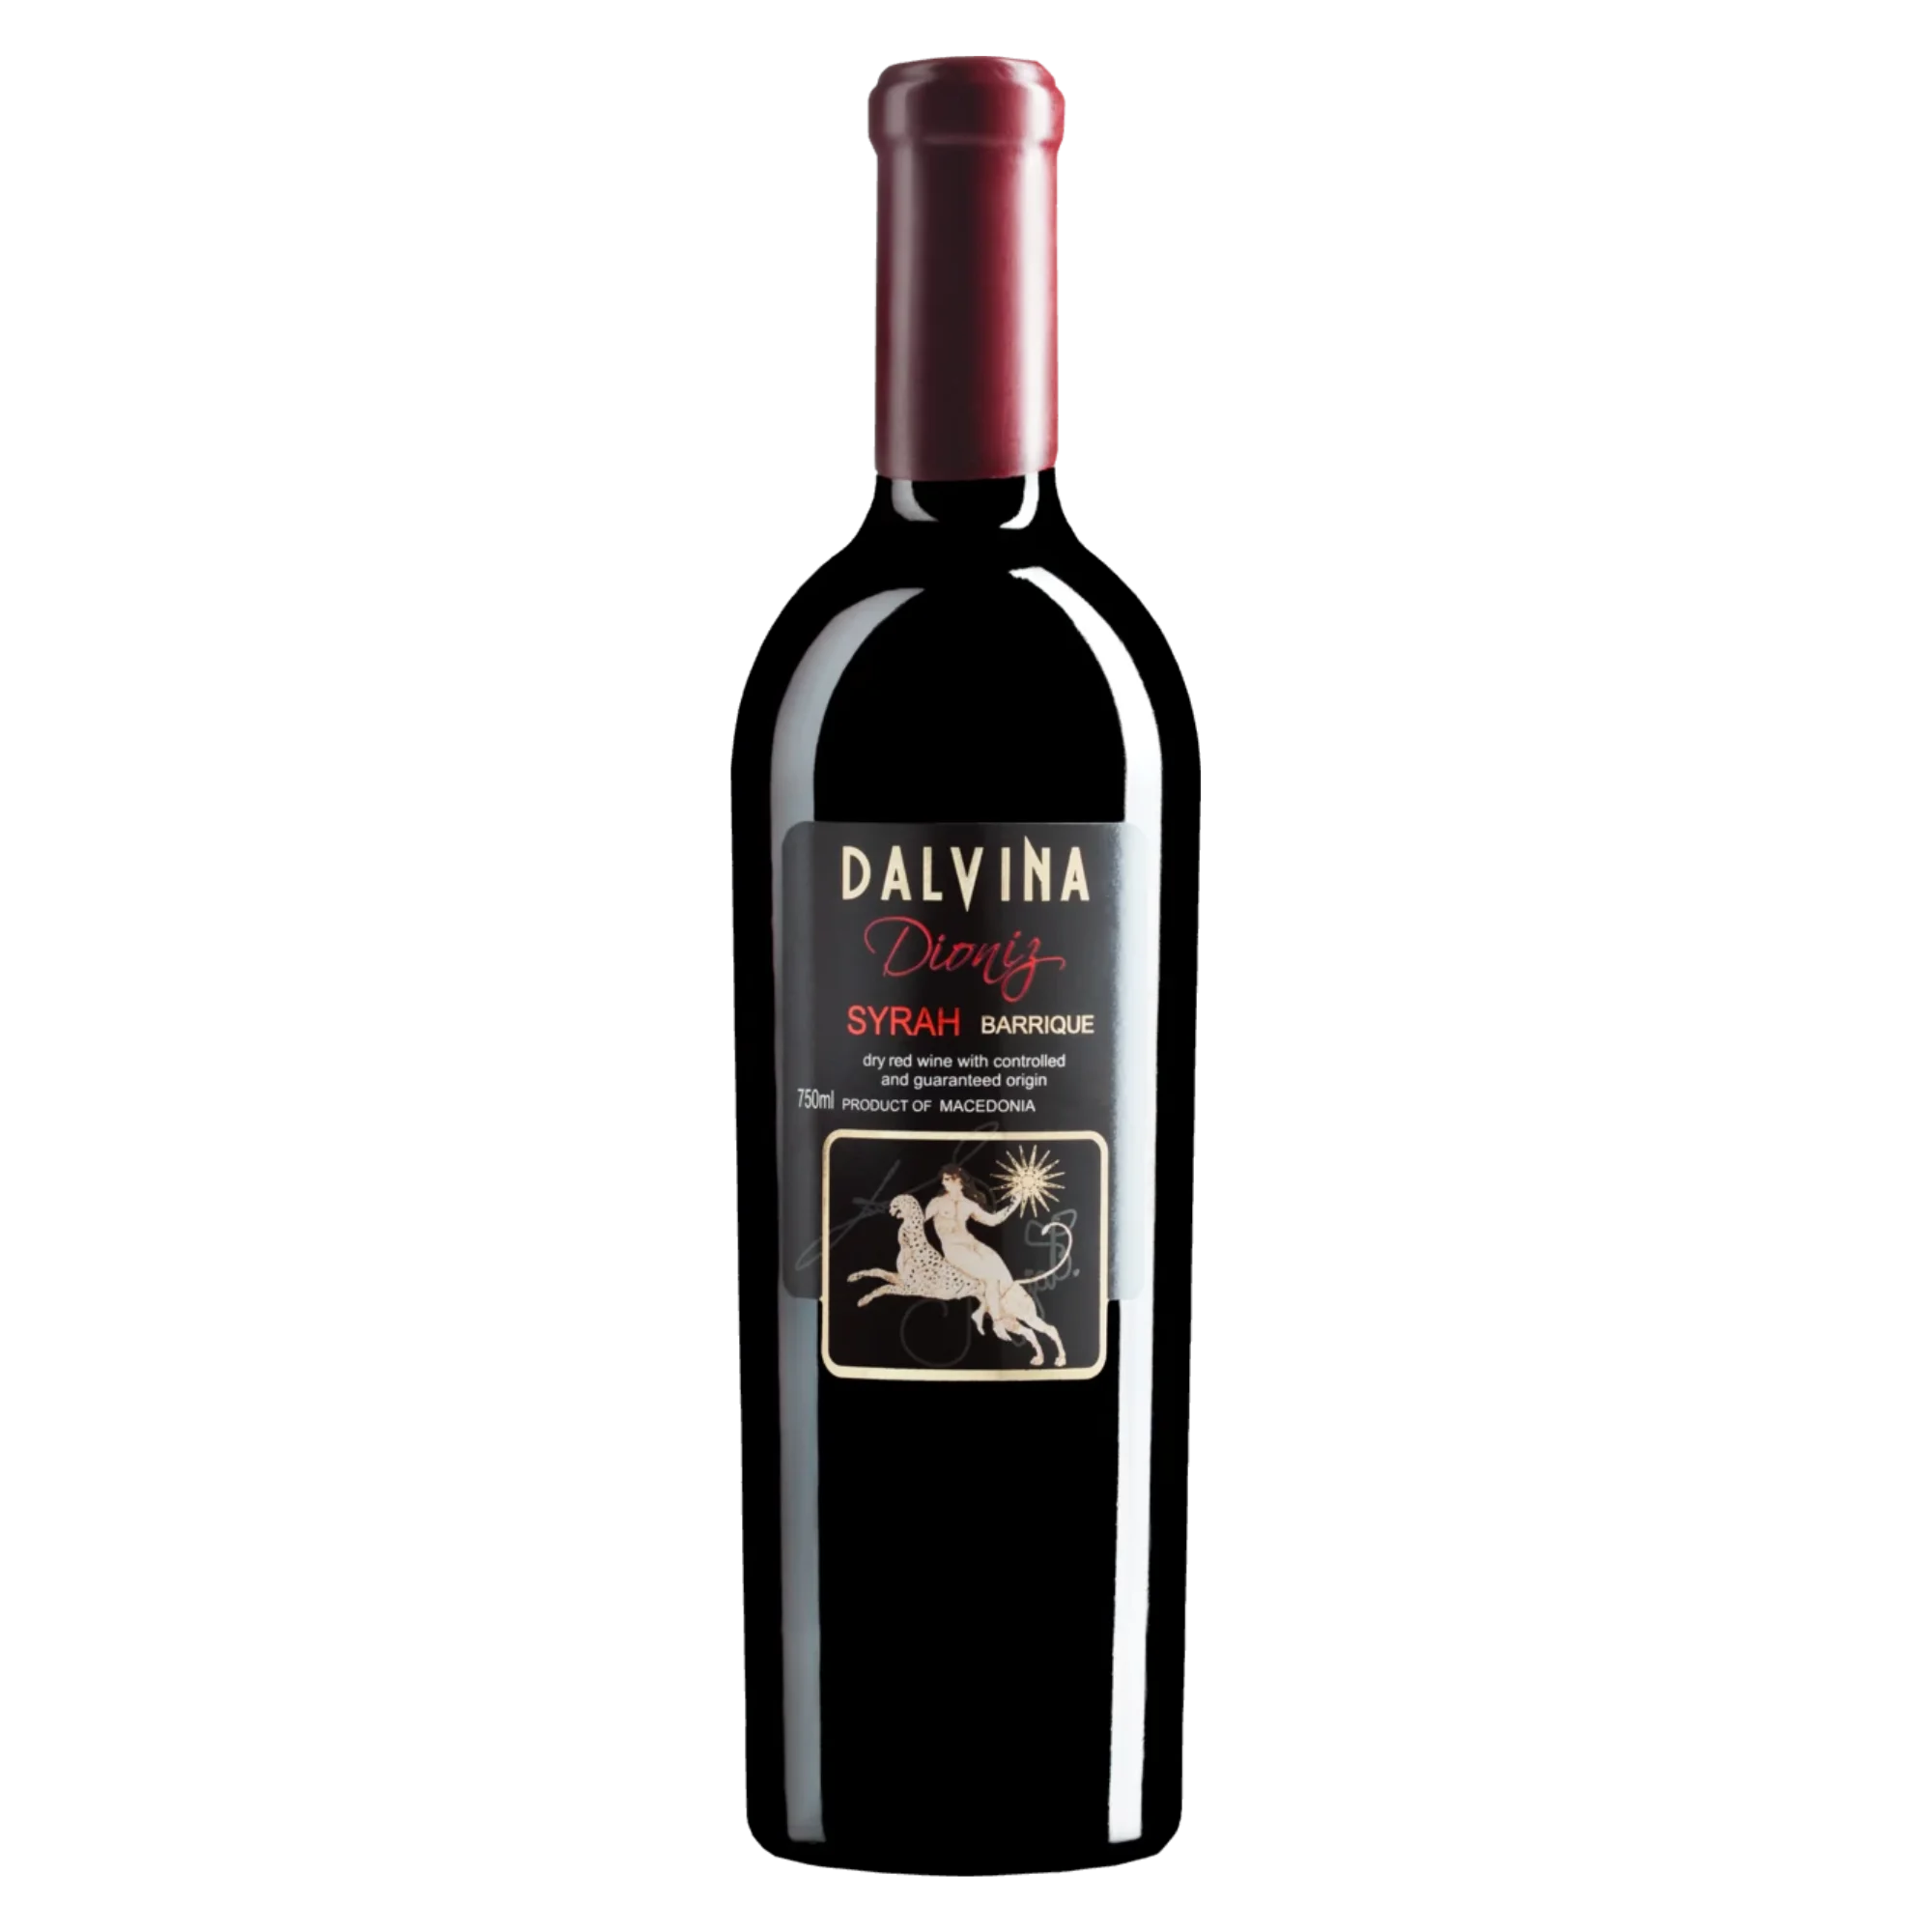 Dioniz Syrah Barrique 2016 - Rotwein trocken aus Nordmazedonien - Dalvina Winery